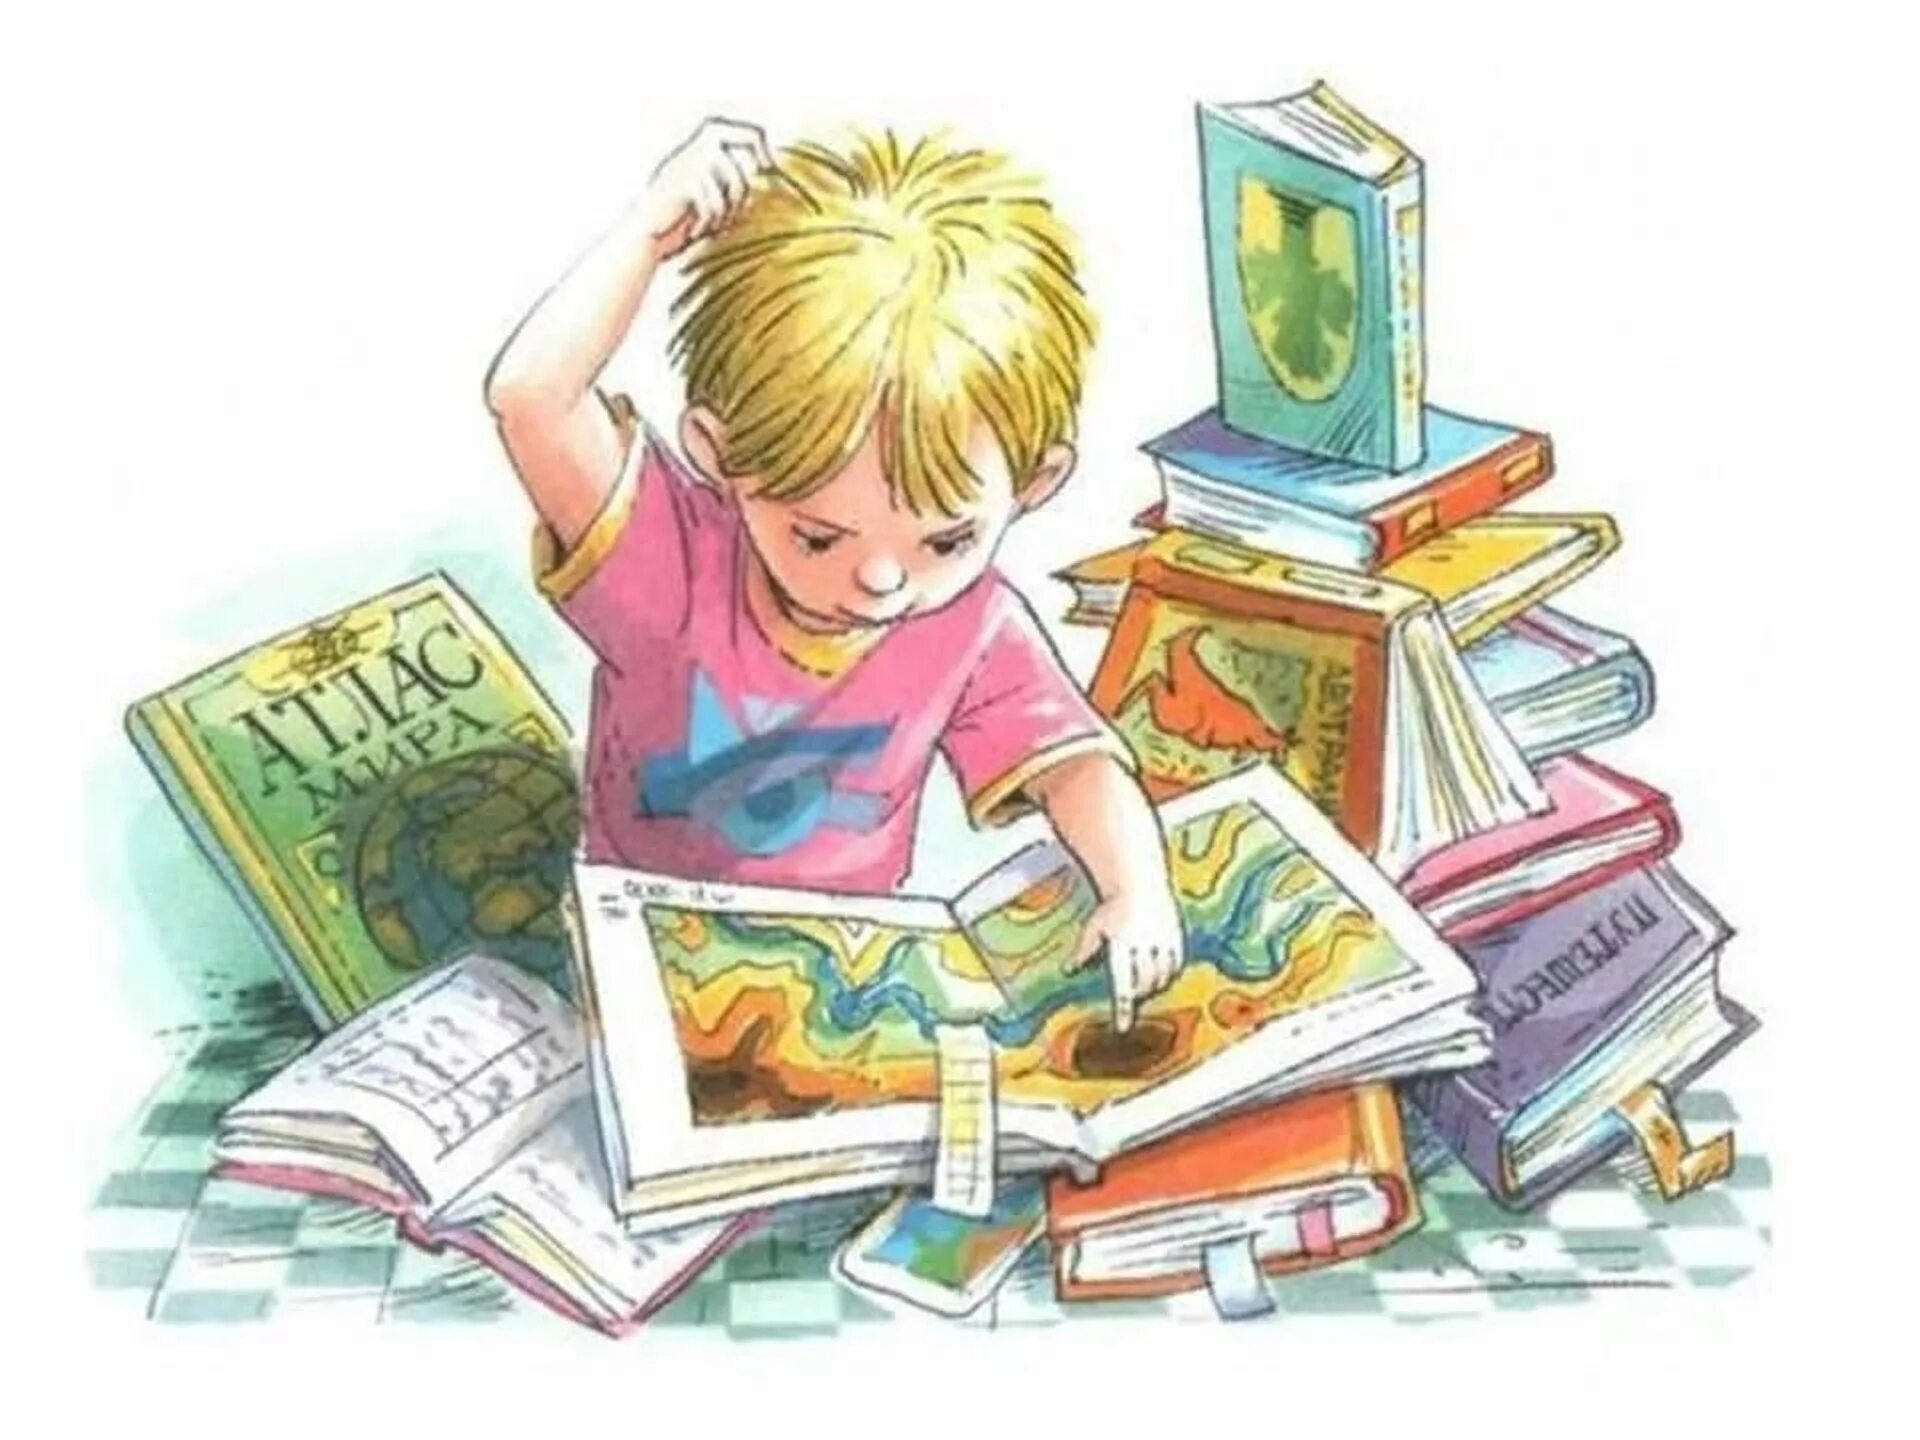 Чтение развлечение. Мальчик с книжкой. Детская литература. Детские книжки. Дети читатели.